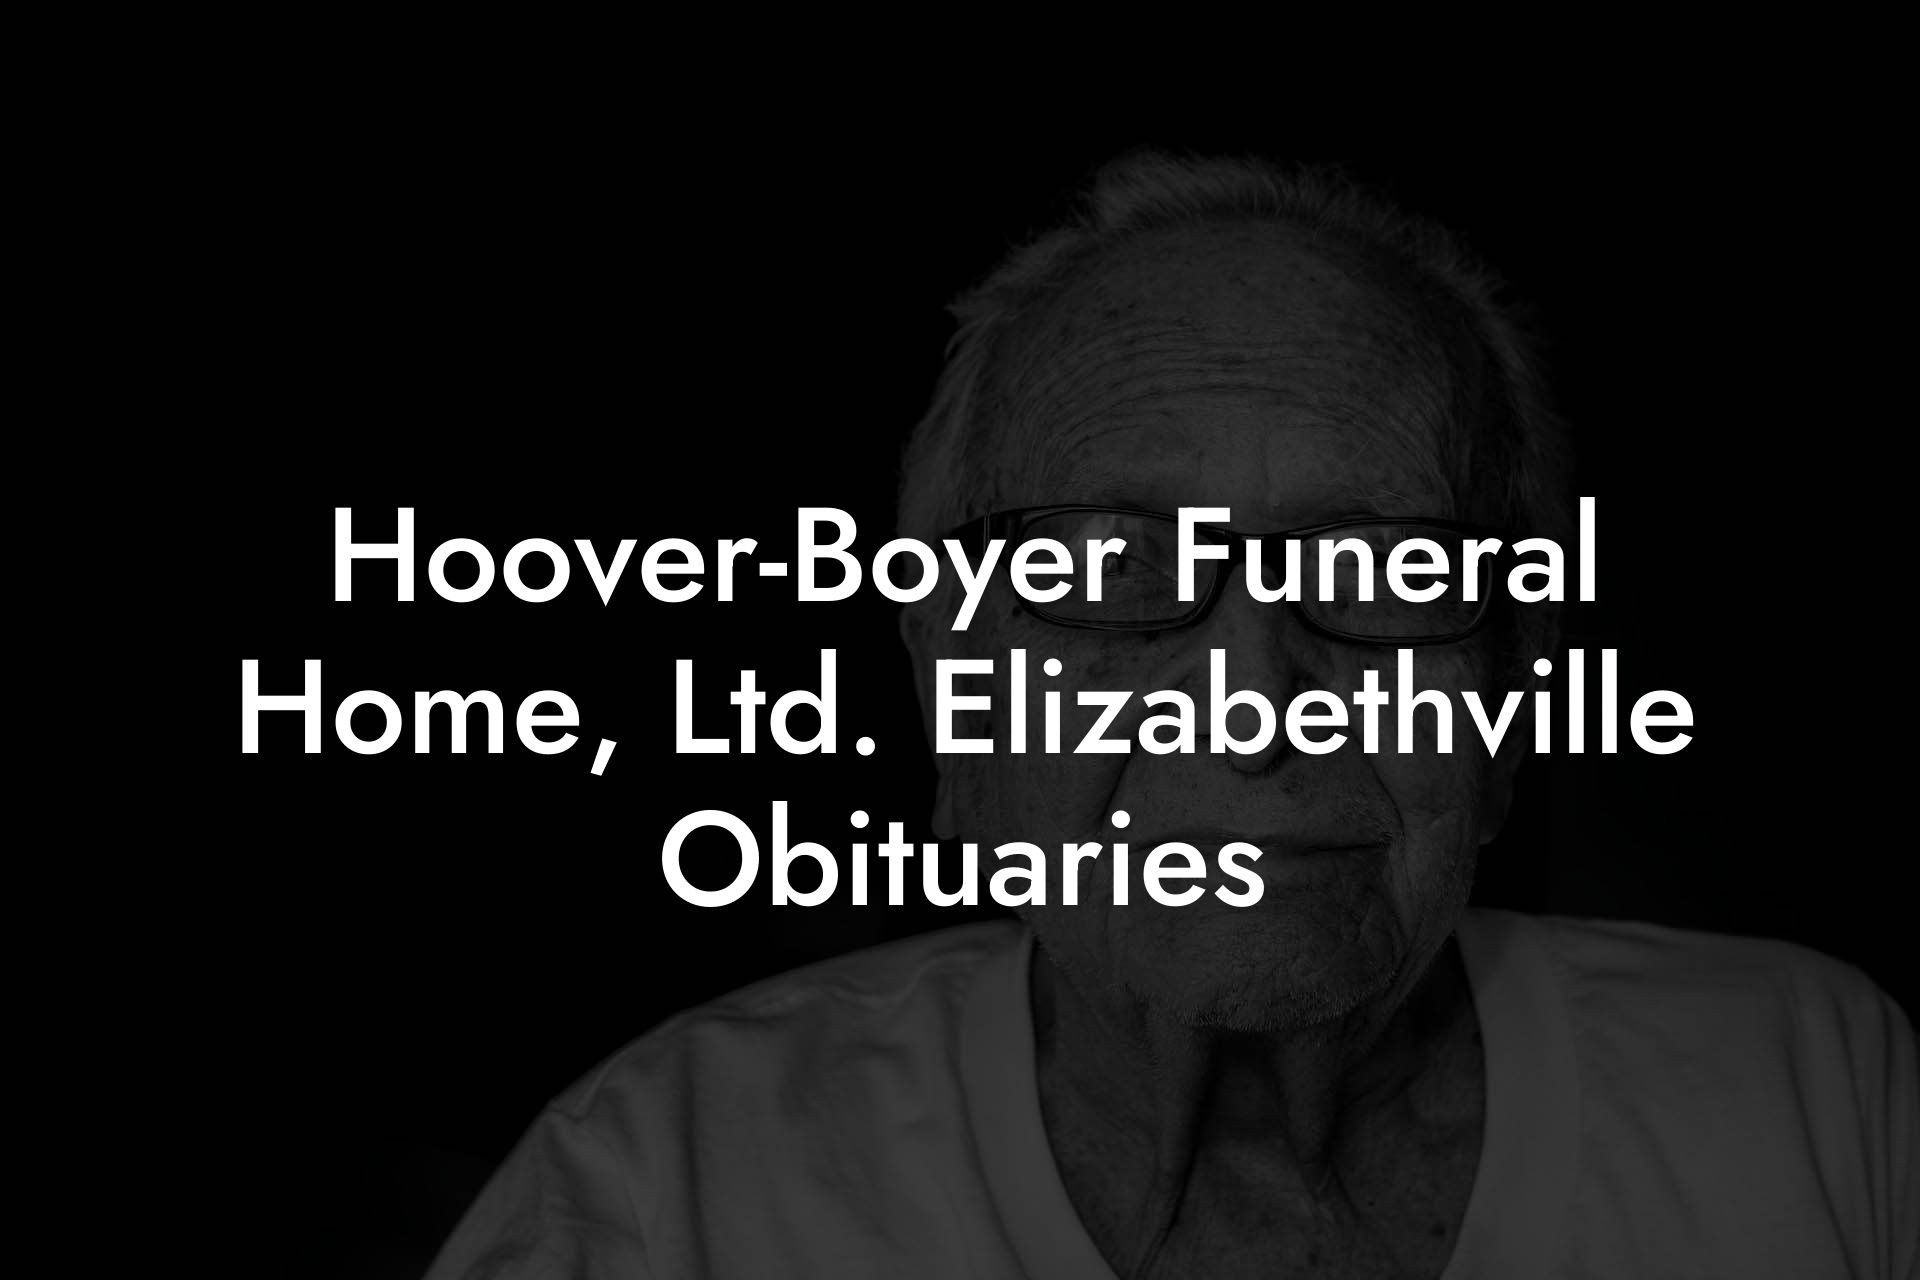 Hoover-Boyer Funeral Home, Ltd. Elizabethville Obituaries